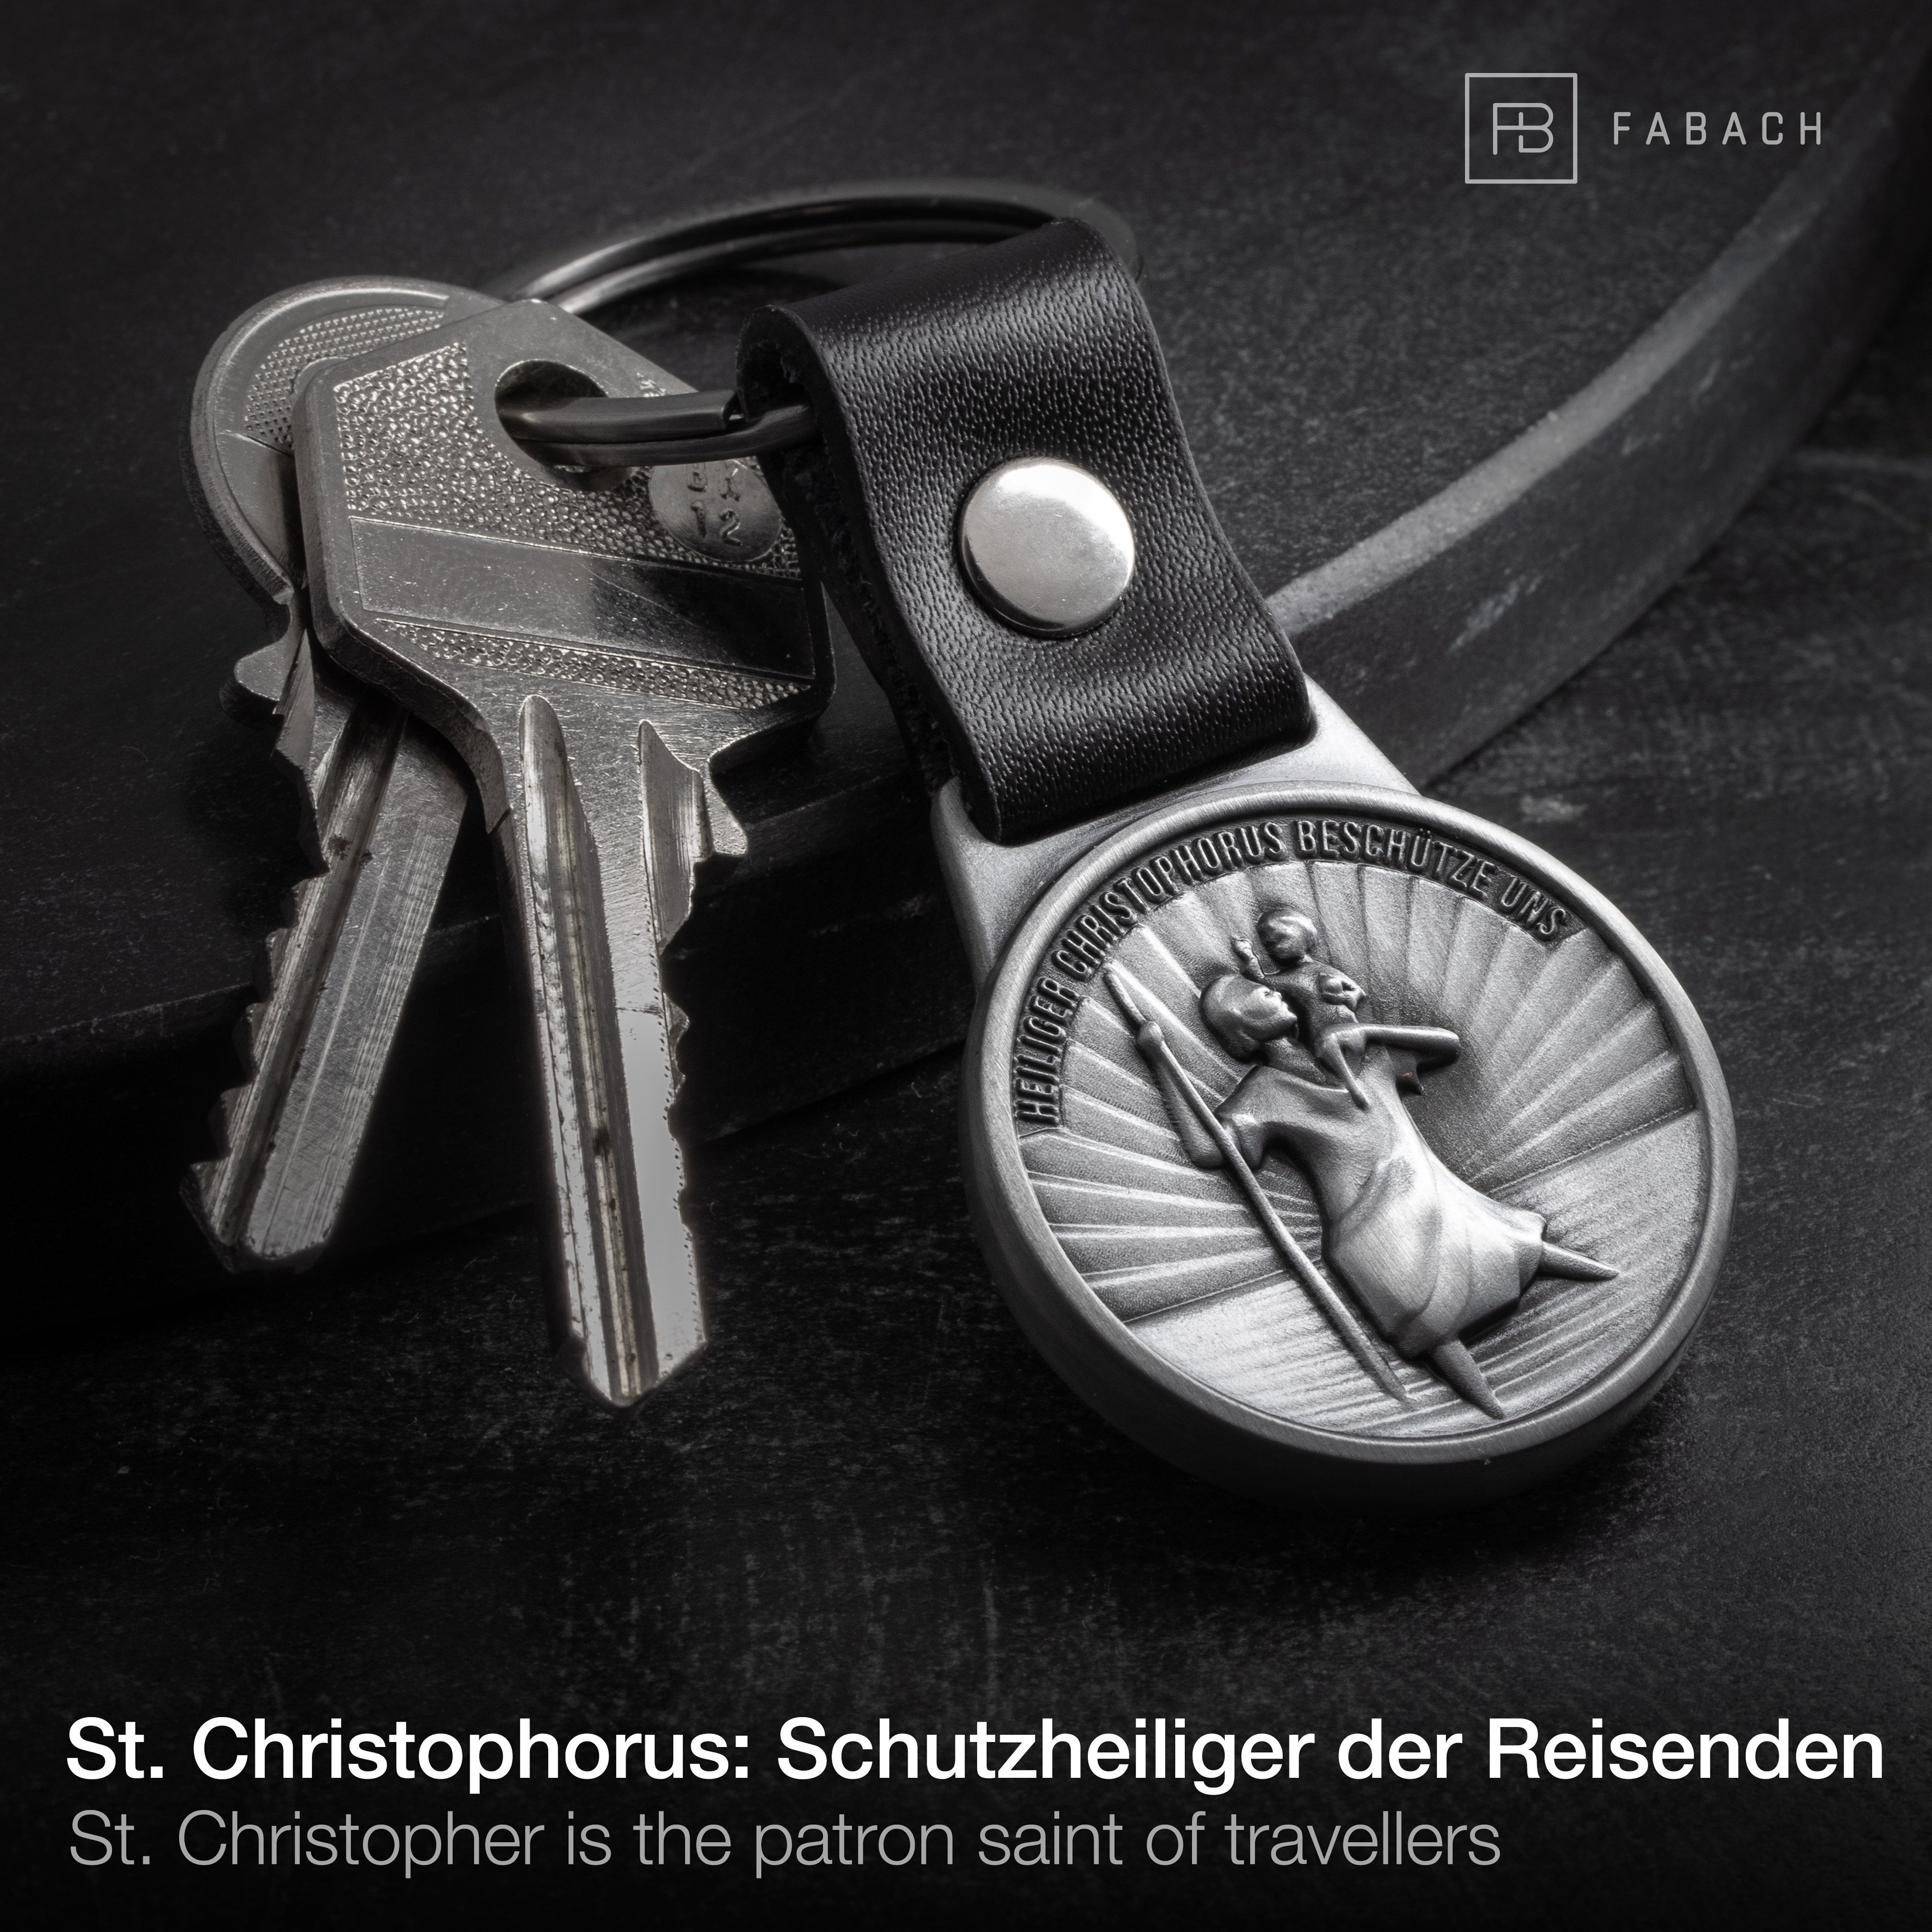 - Reisende Lederband Leder Schlüsselanhänger Antique am Schwarzes Autofahrer und Silber Schutzpatron FABACH Christophorus für